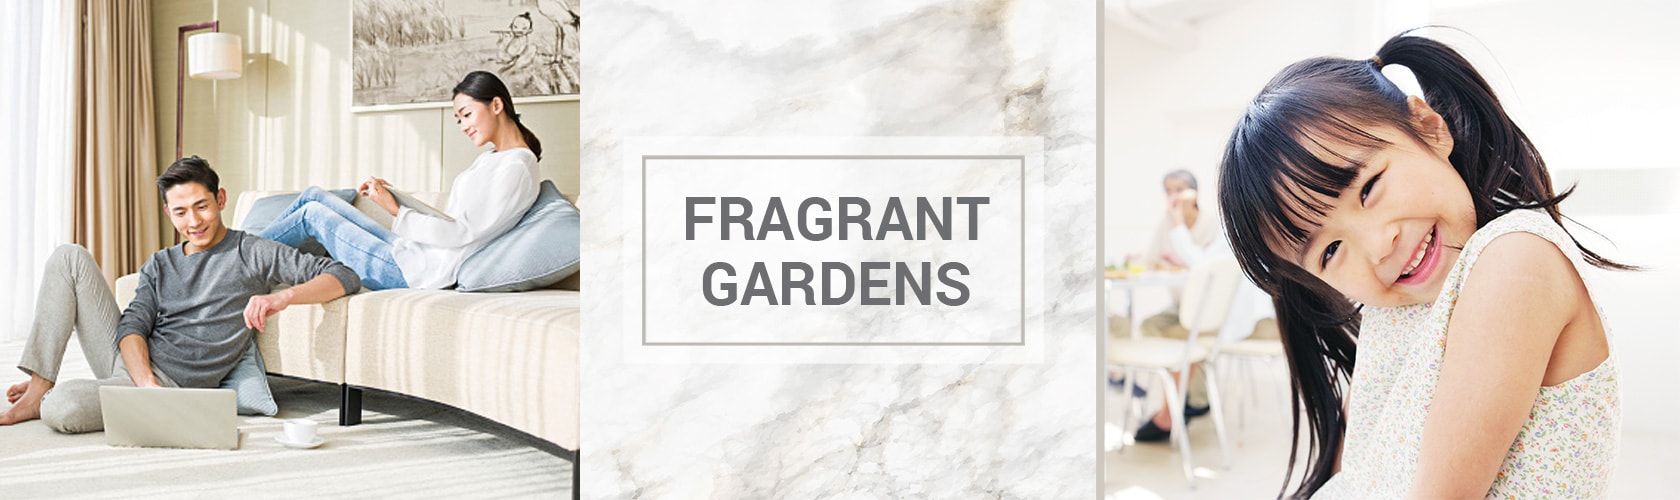 Fragrant Gardens at Upper Paya Lebar Road by Far East Organization For Sale 